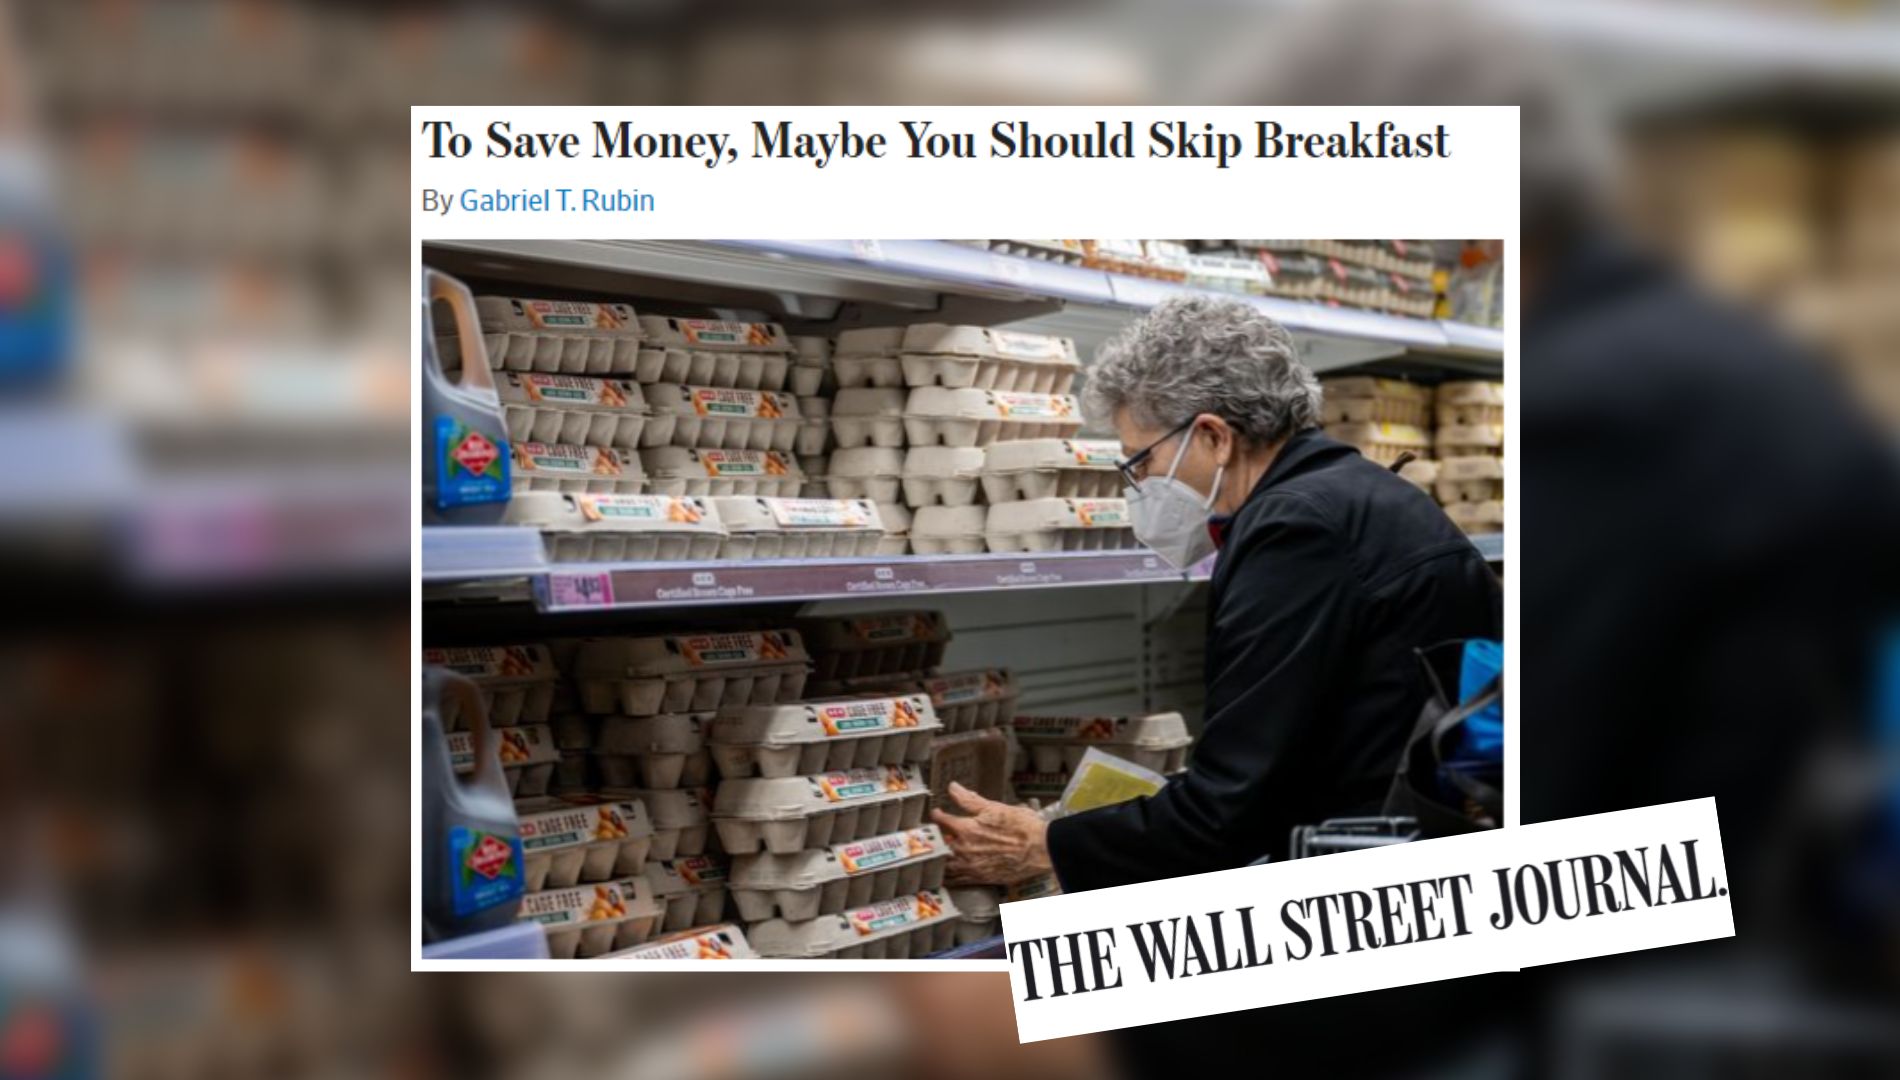 ¿Cómo dejar de ser pobre? No comas: The Wall Street Journal dice que para ahorrar dinero deberías saltarte el desayuno